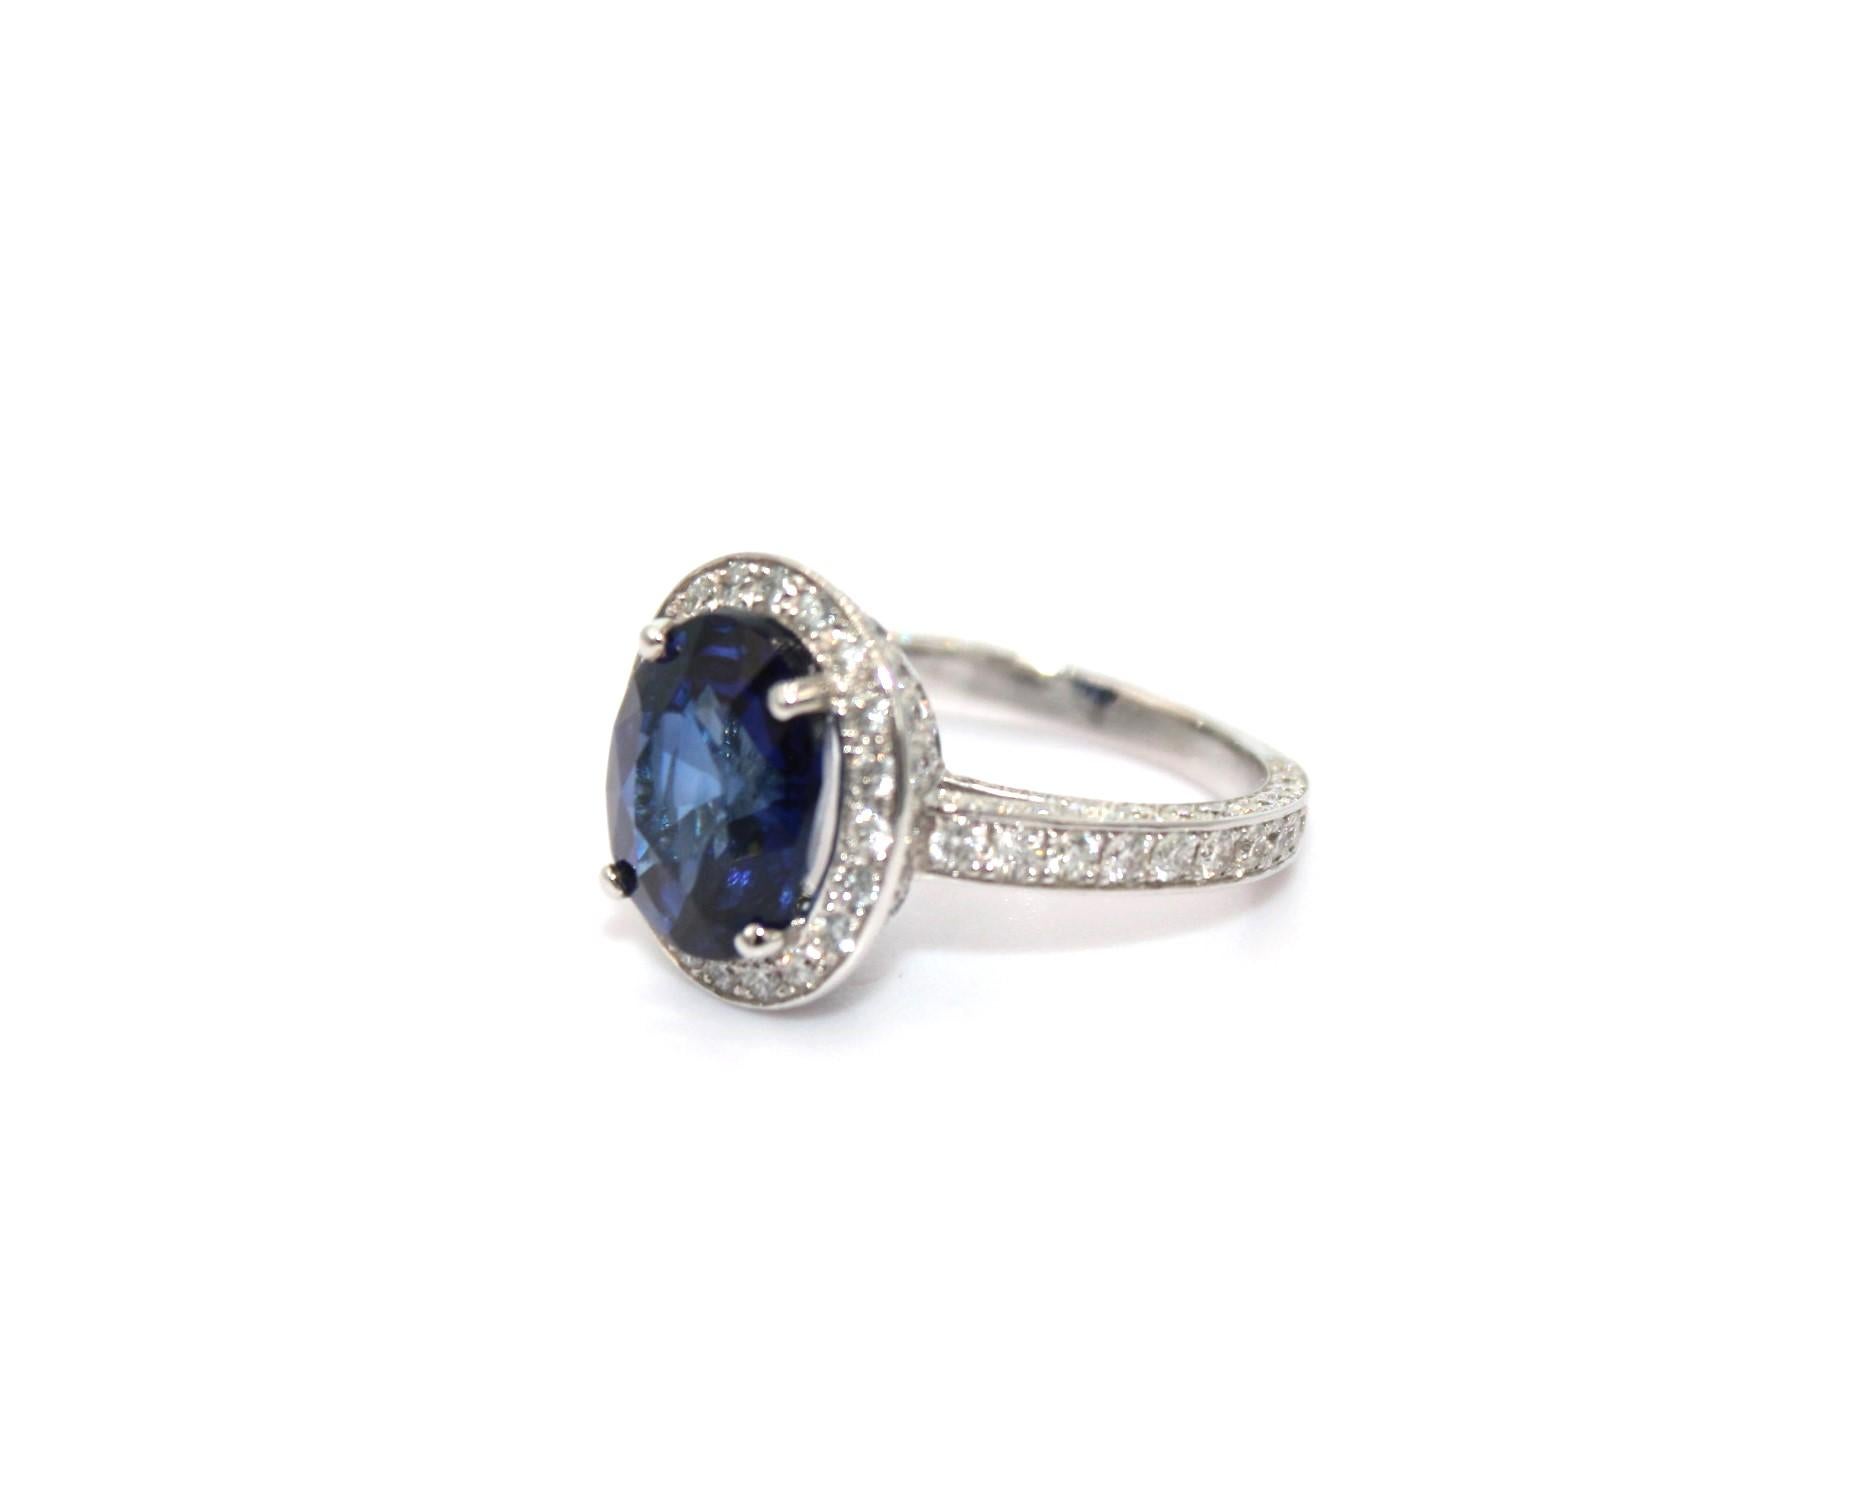 5,65 Karat ovaler Ceylon-Saphir, umrahmt von 306 runden Diamanten mit einem Gesamtgewicht von 5,20 Karat. 

Dieser atemberaubende Saphir-Diamant-Ring wird Ihre Eleganz und Einzigartigkeit unterstreichen. 

Artikel-Details:
- Art: Ring
- Metall: 18K